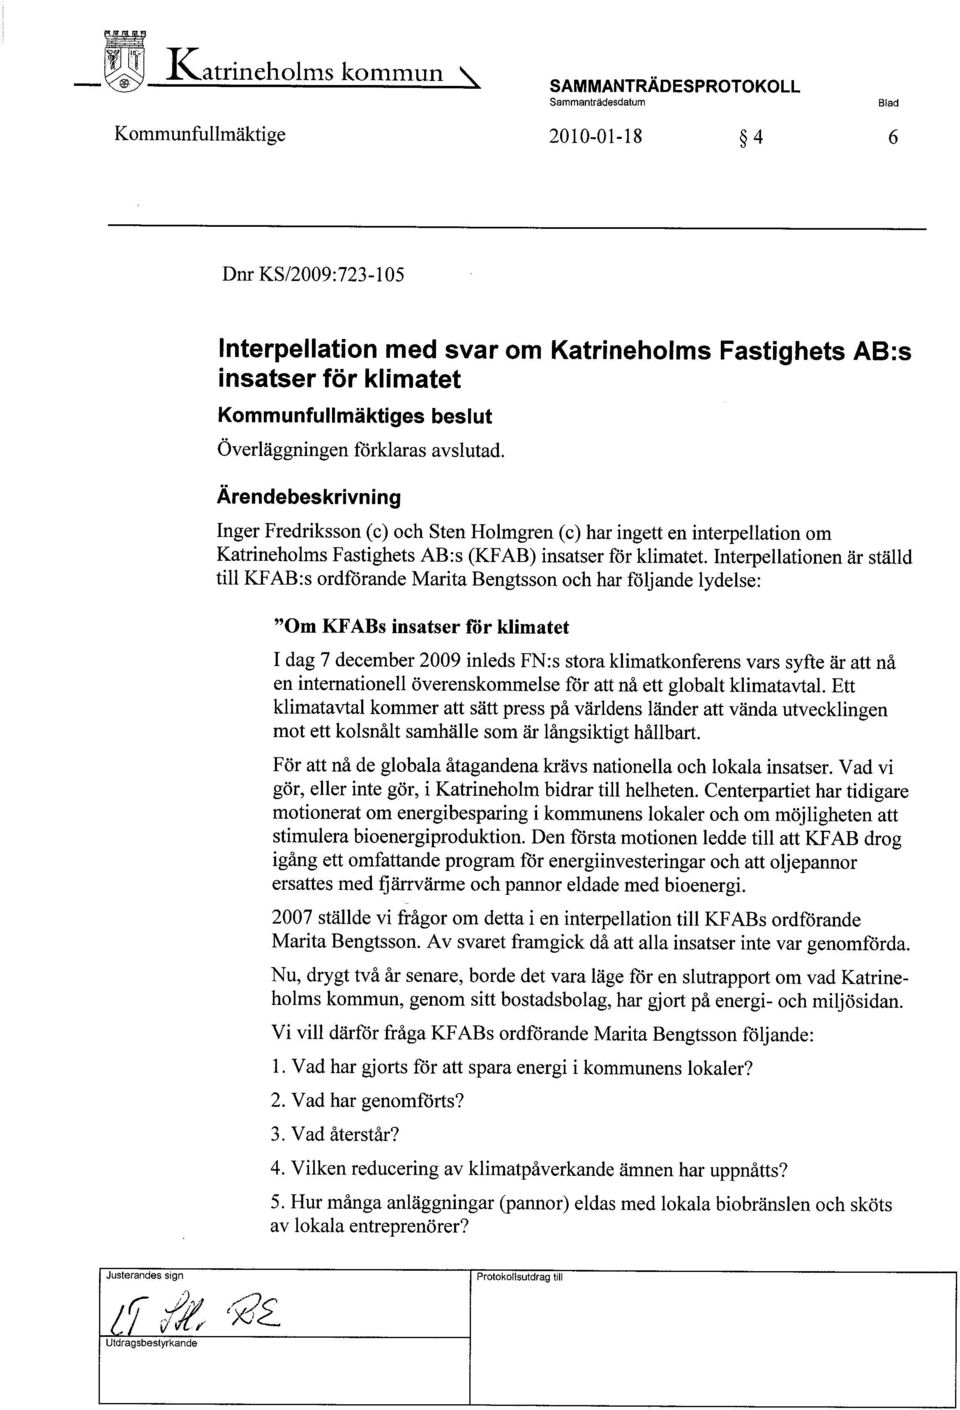 Interpellationen är ställd til KF AB:s ordförande Marita Bengtsson och har följande lydelse: "Om KFABs insatser för klimatet I dag 7 december 2009 inleds FN:s stora klimatkonferens vars syfte är att